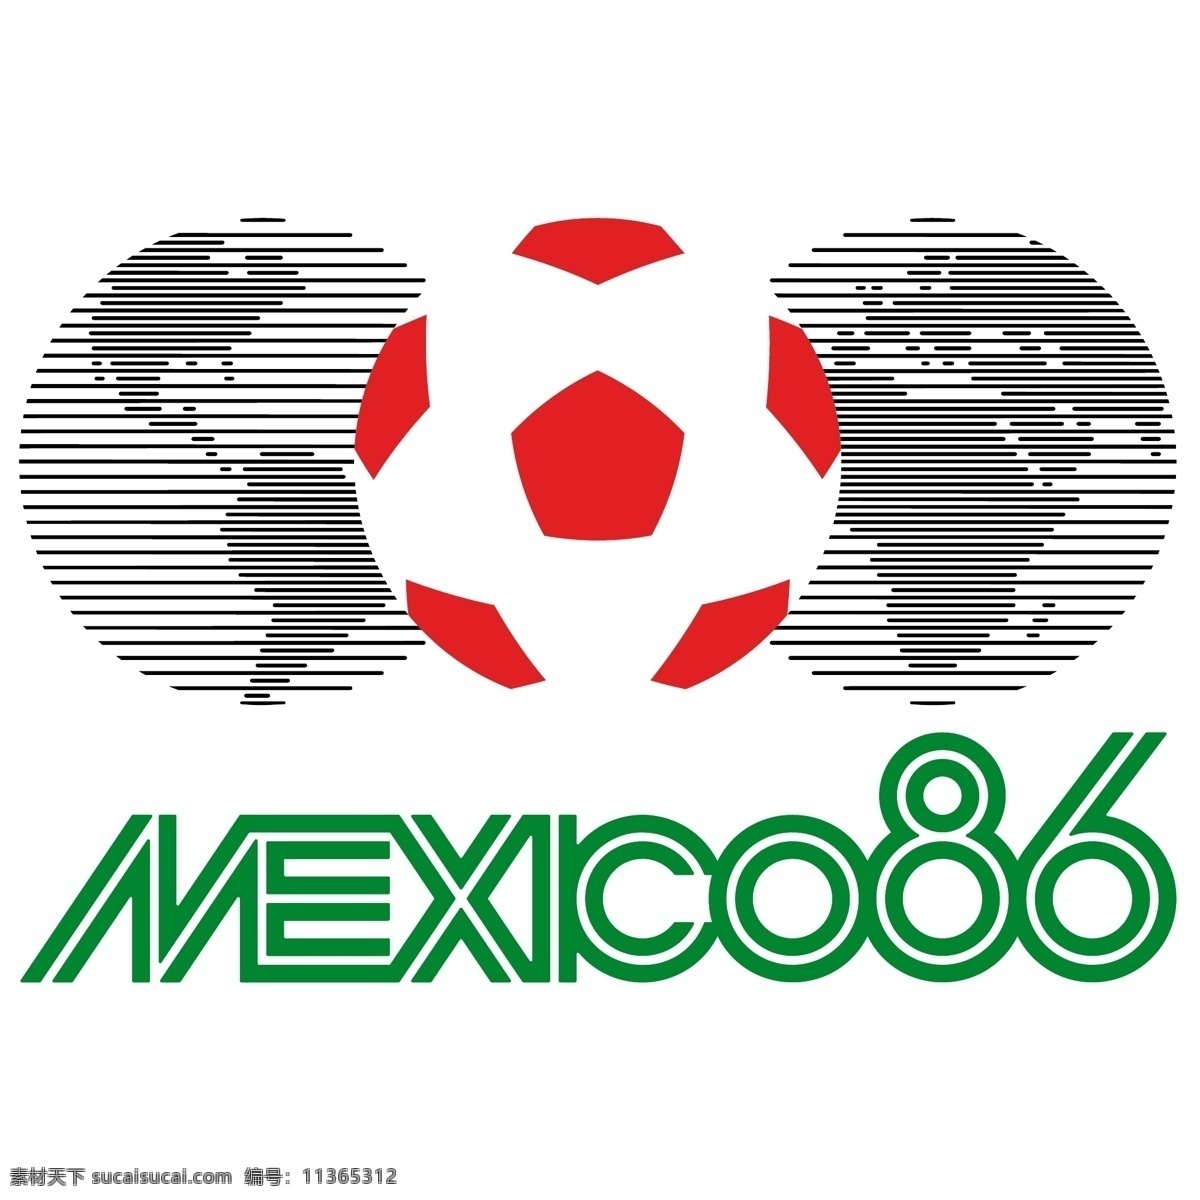 墨西哥 1986 国旗 矢量 艺术 自由 mapa de墨西哥 墨西哥州 政治 划分 地图 墨西哥自由 标志 hecho 恩 墨西哥向量 美国 标 志在 向量解 矢量图 建筑家居